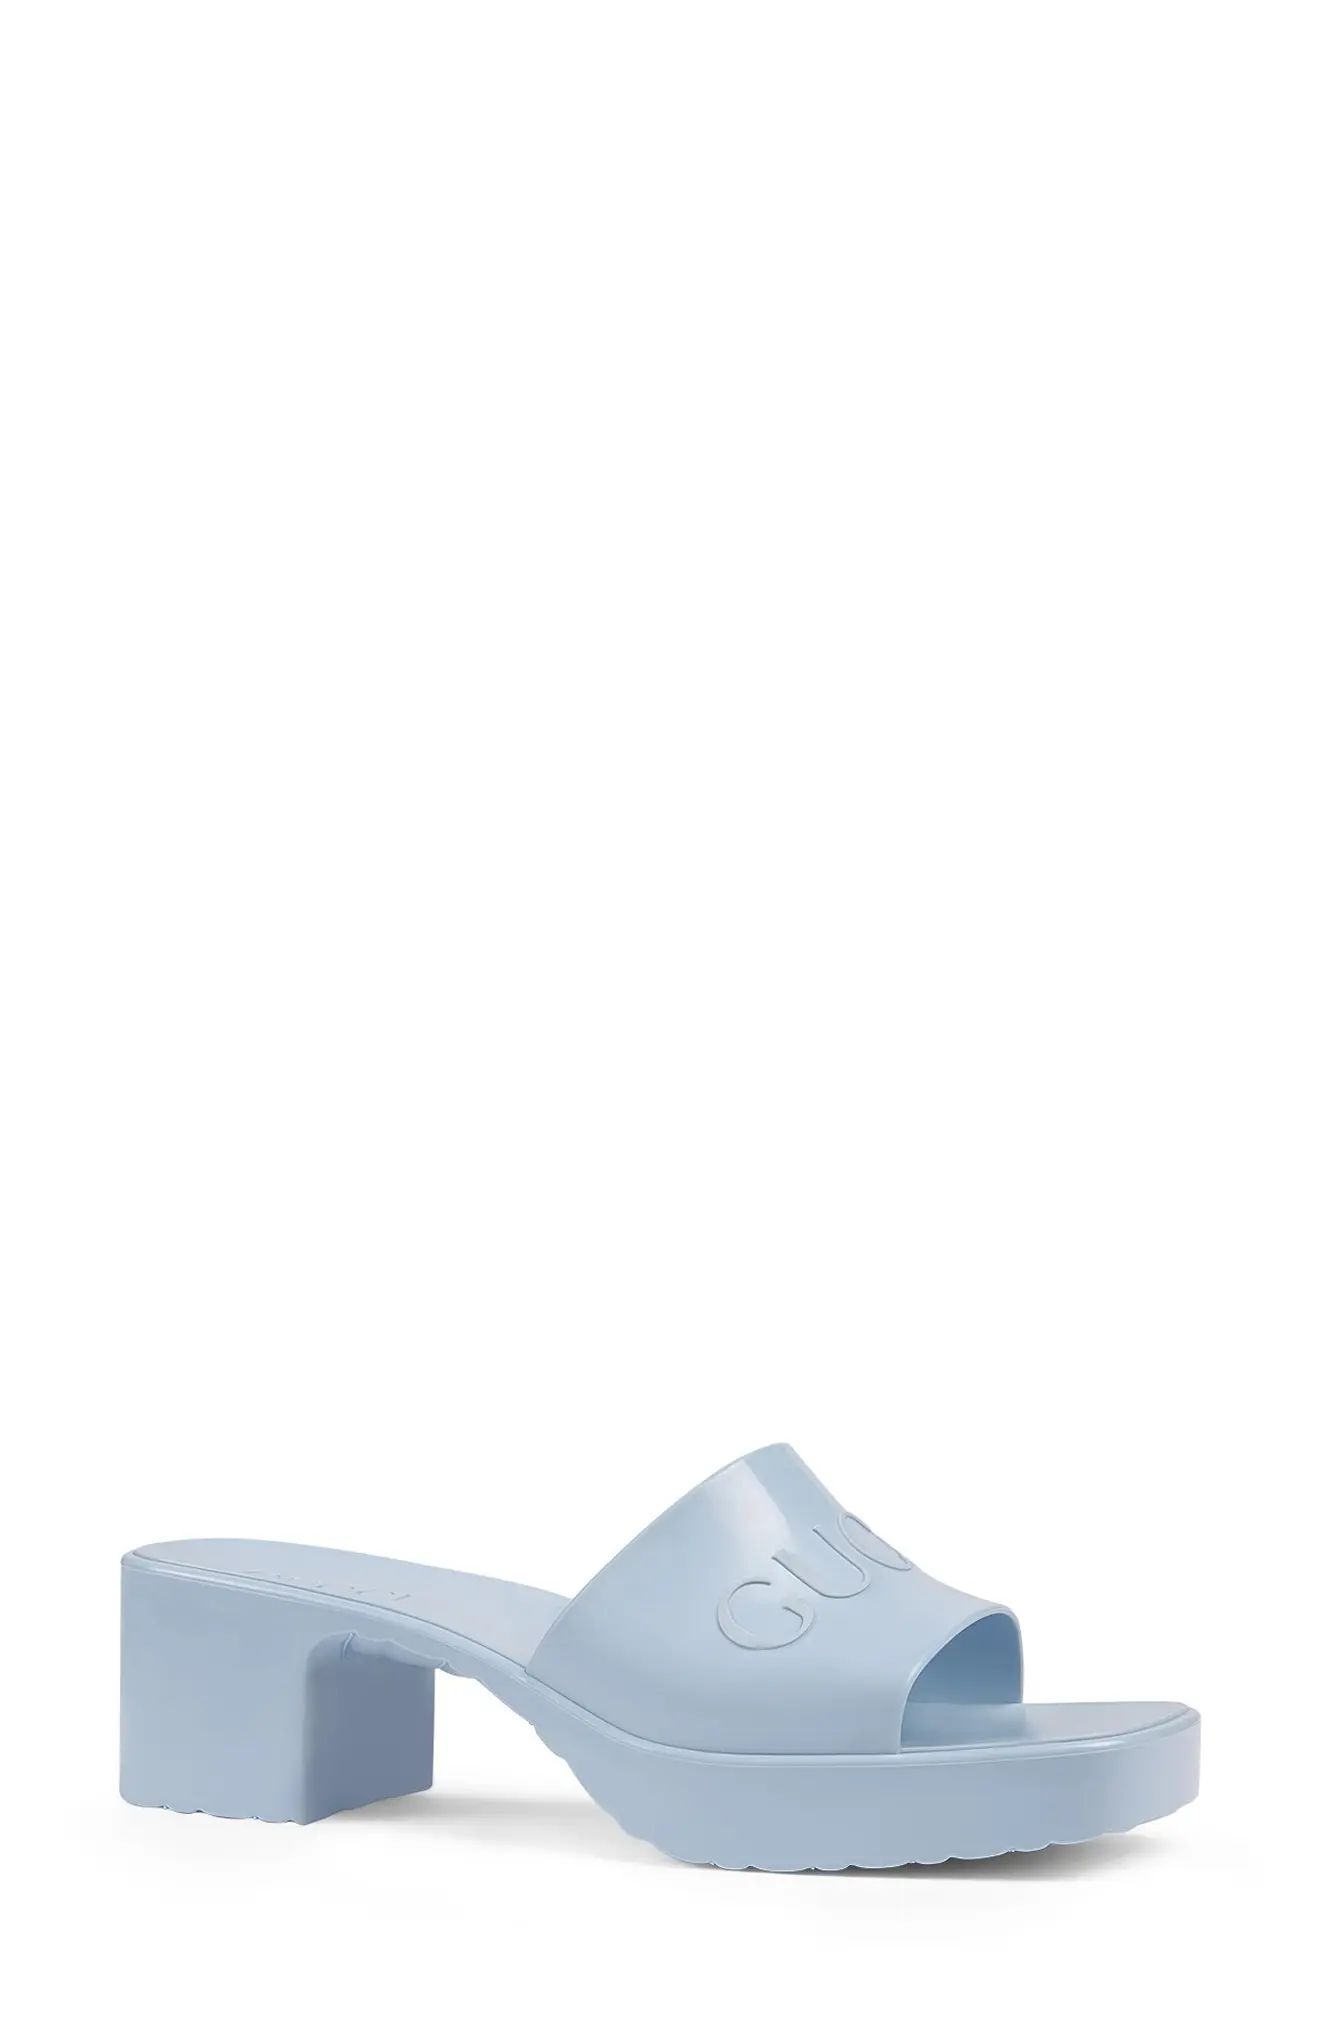 Women's Gucci Rubber Logo Platform Slide Sandal, Size 11US - Blue | Nordstrom